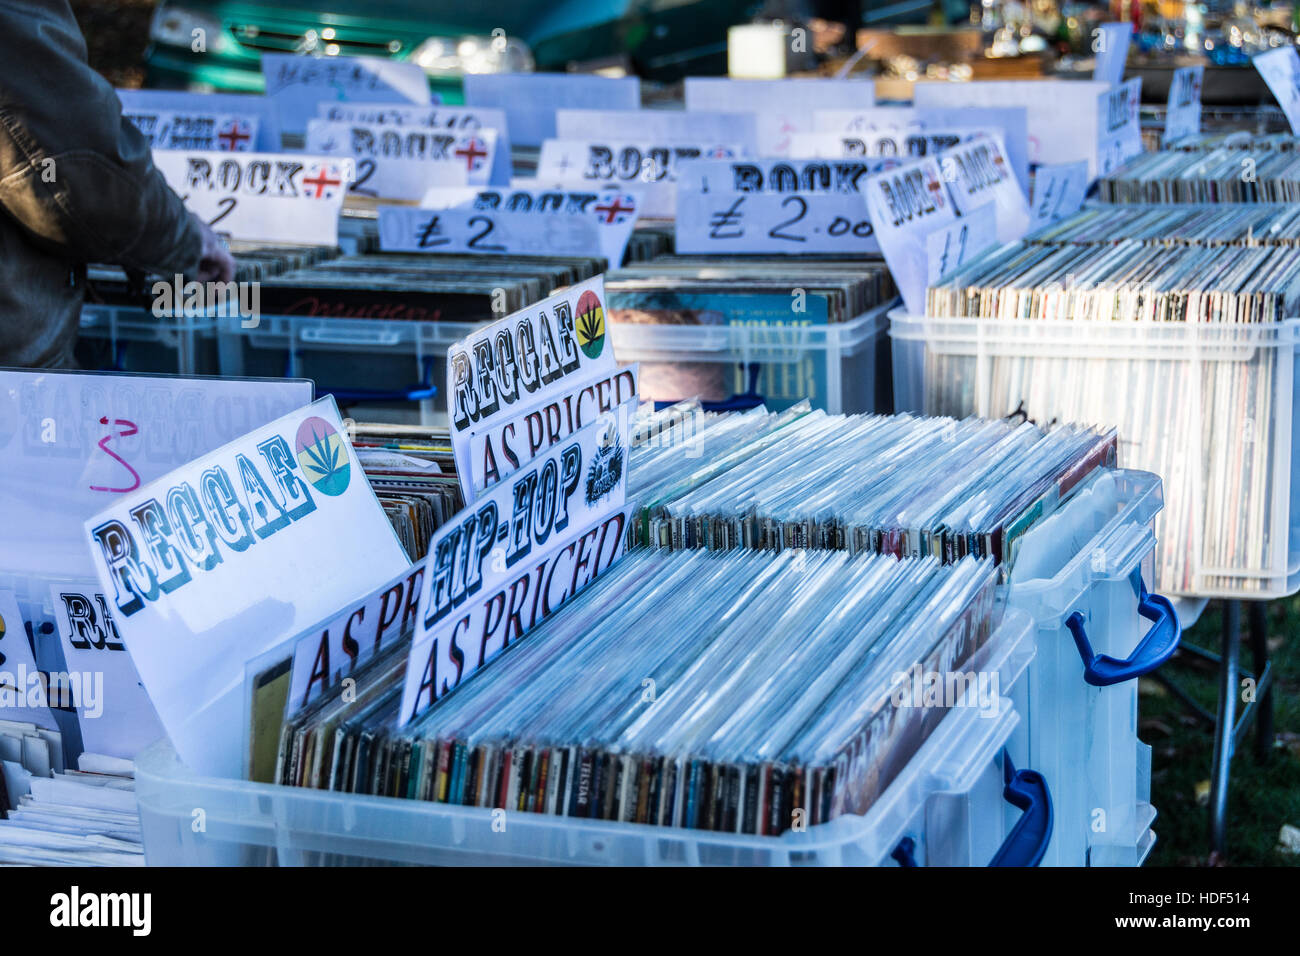 Alte Vinyl Schallplatten zum Verkauf auf einem Flohmarkt in London,  England, UK Stockfotografie - Alamy